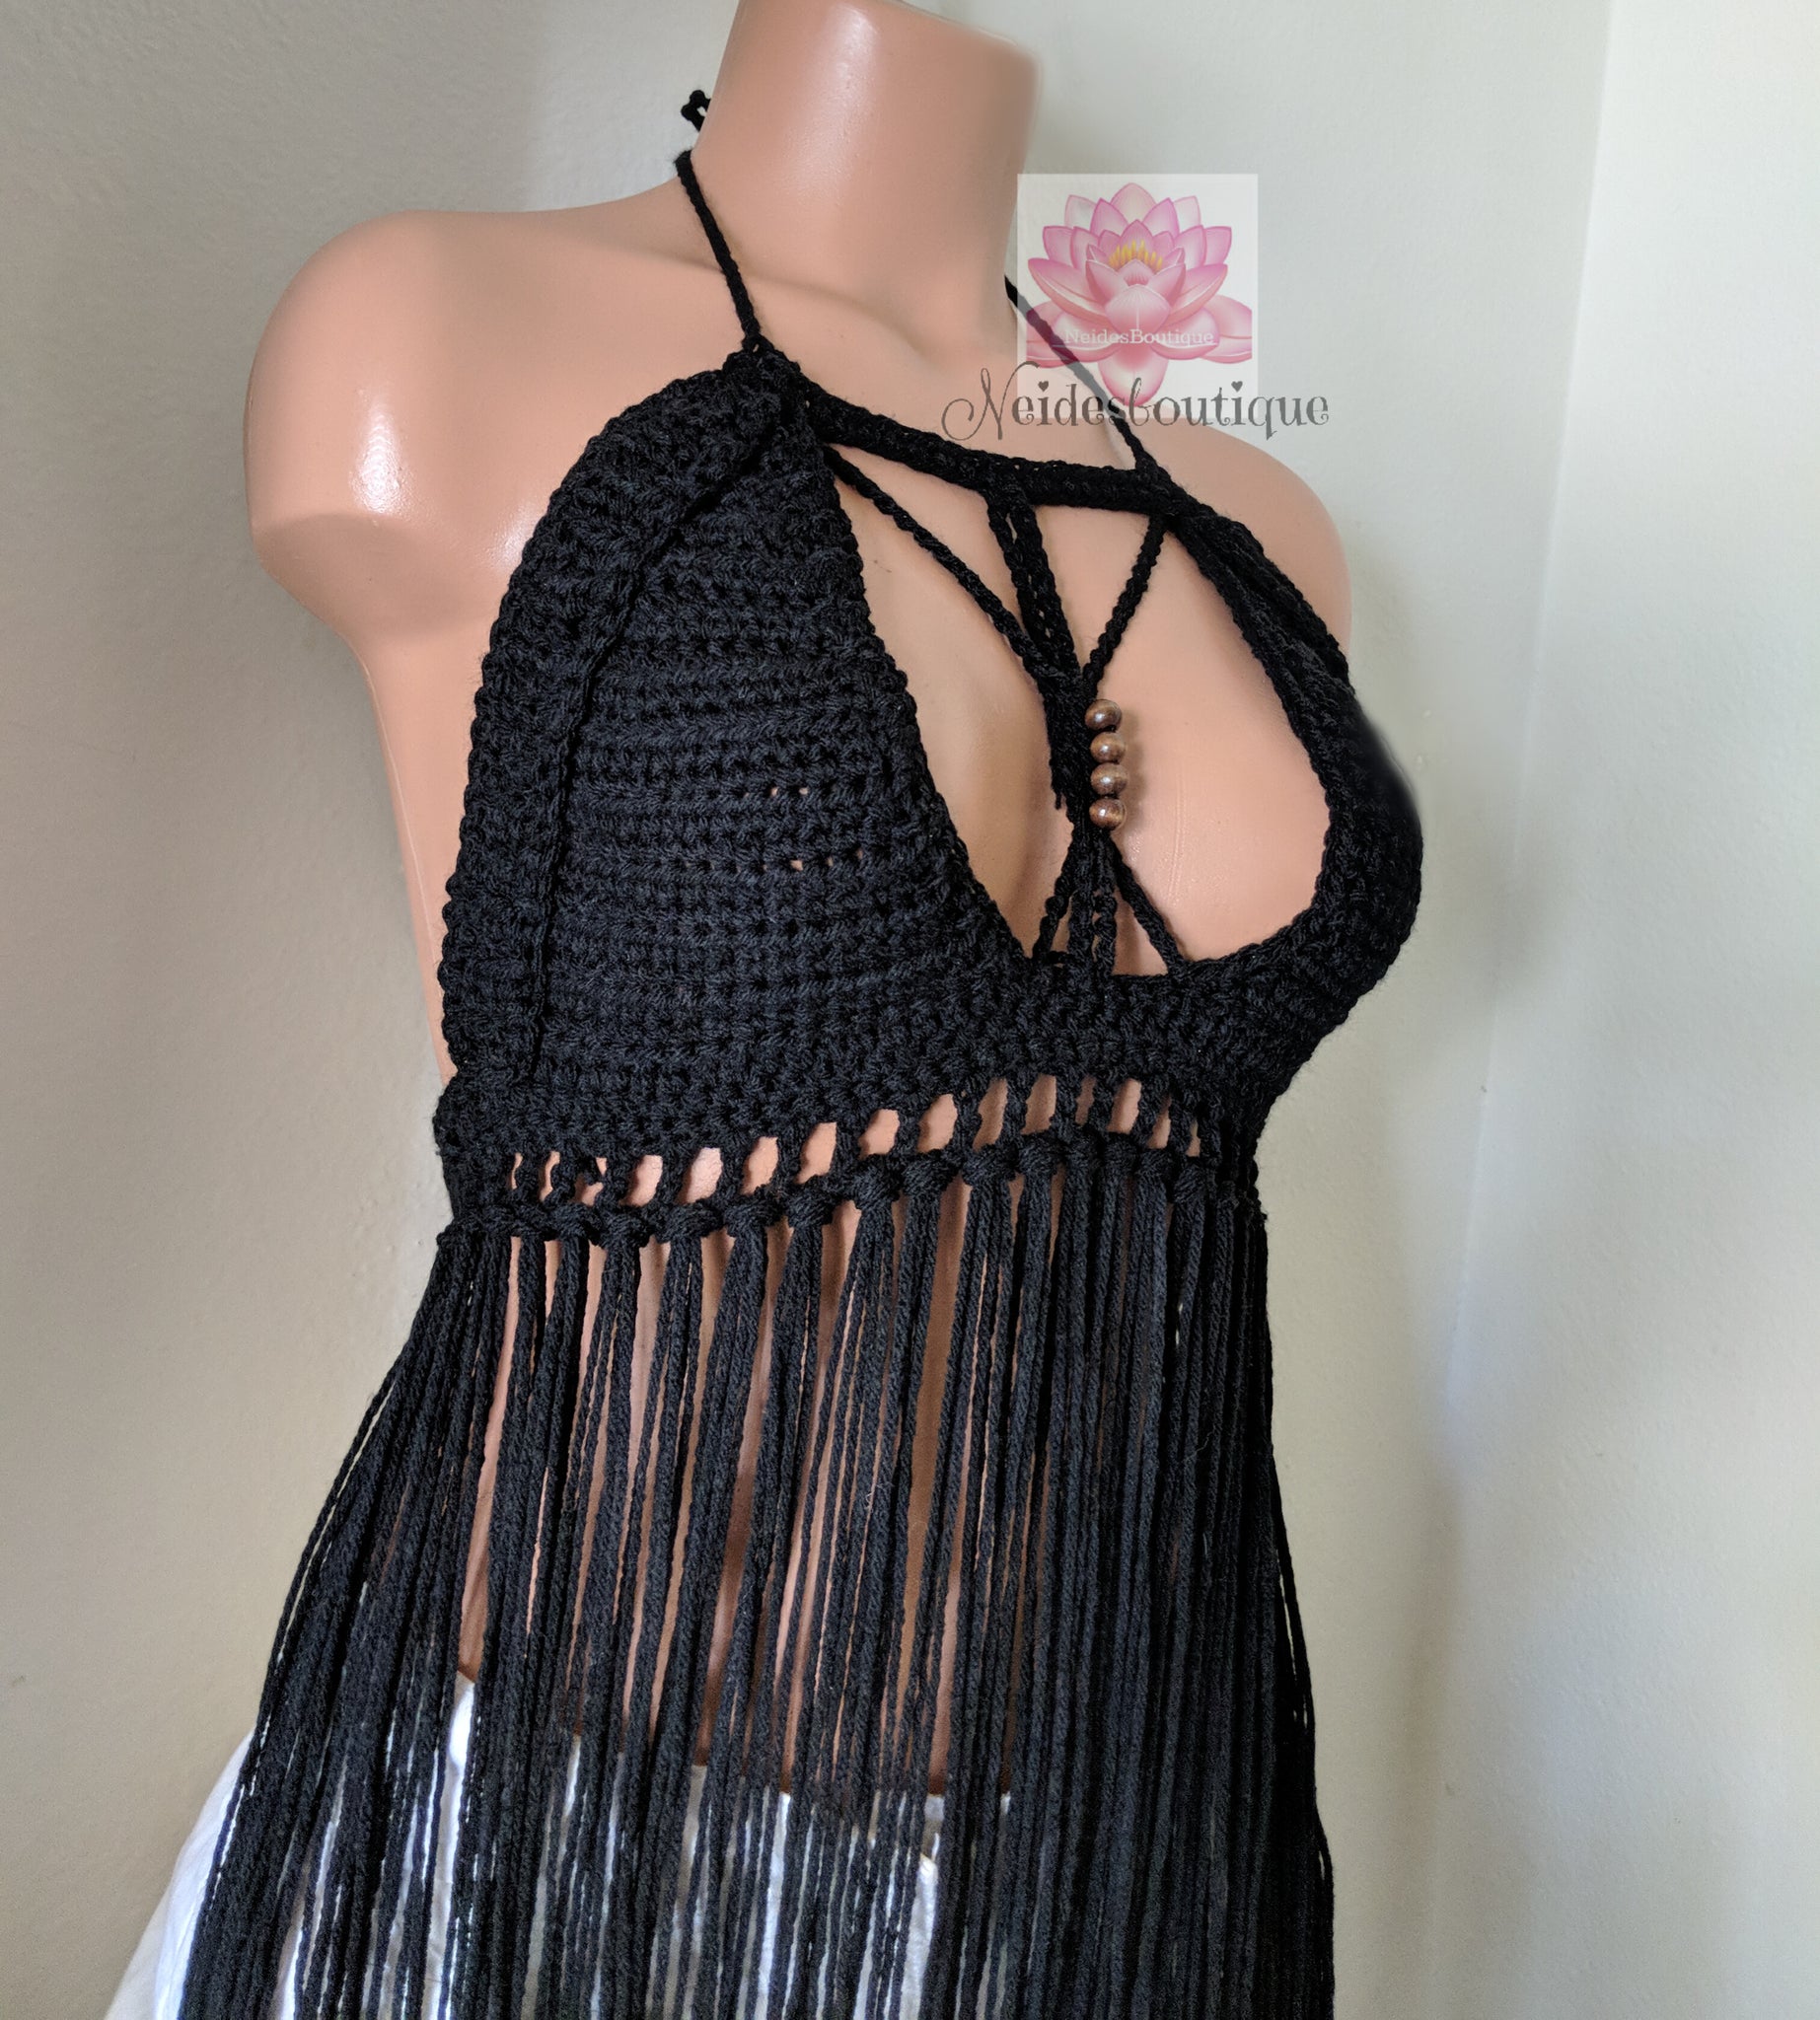 The Butterfly top, Black fringe Crochet bralette, bikini top